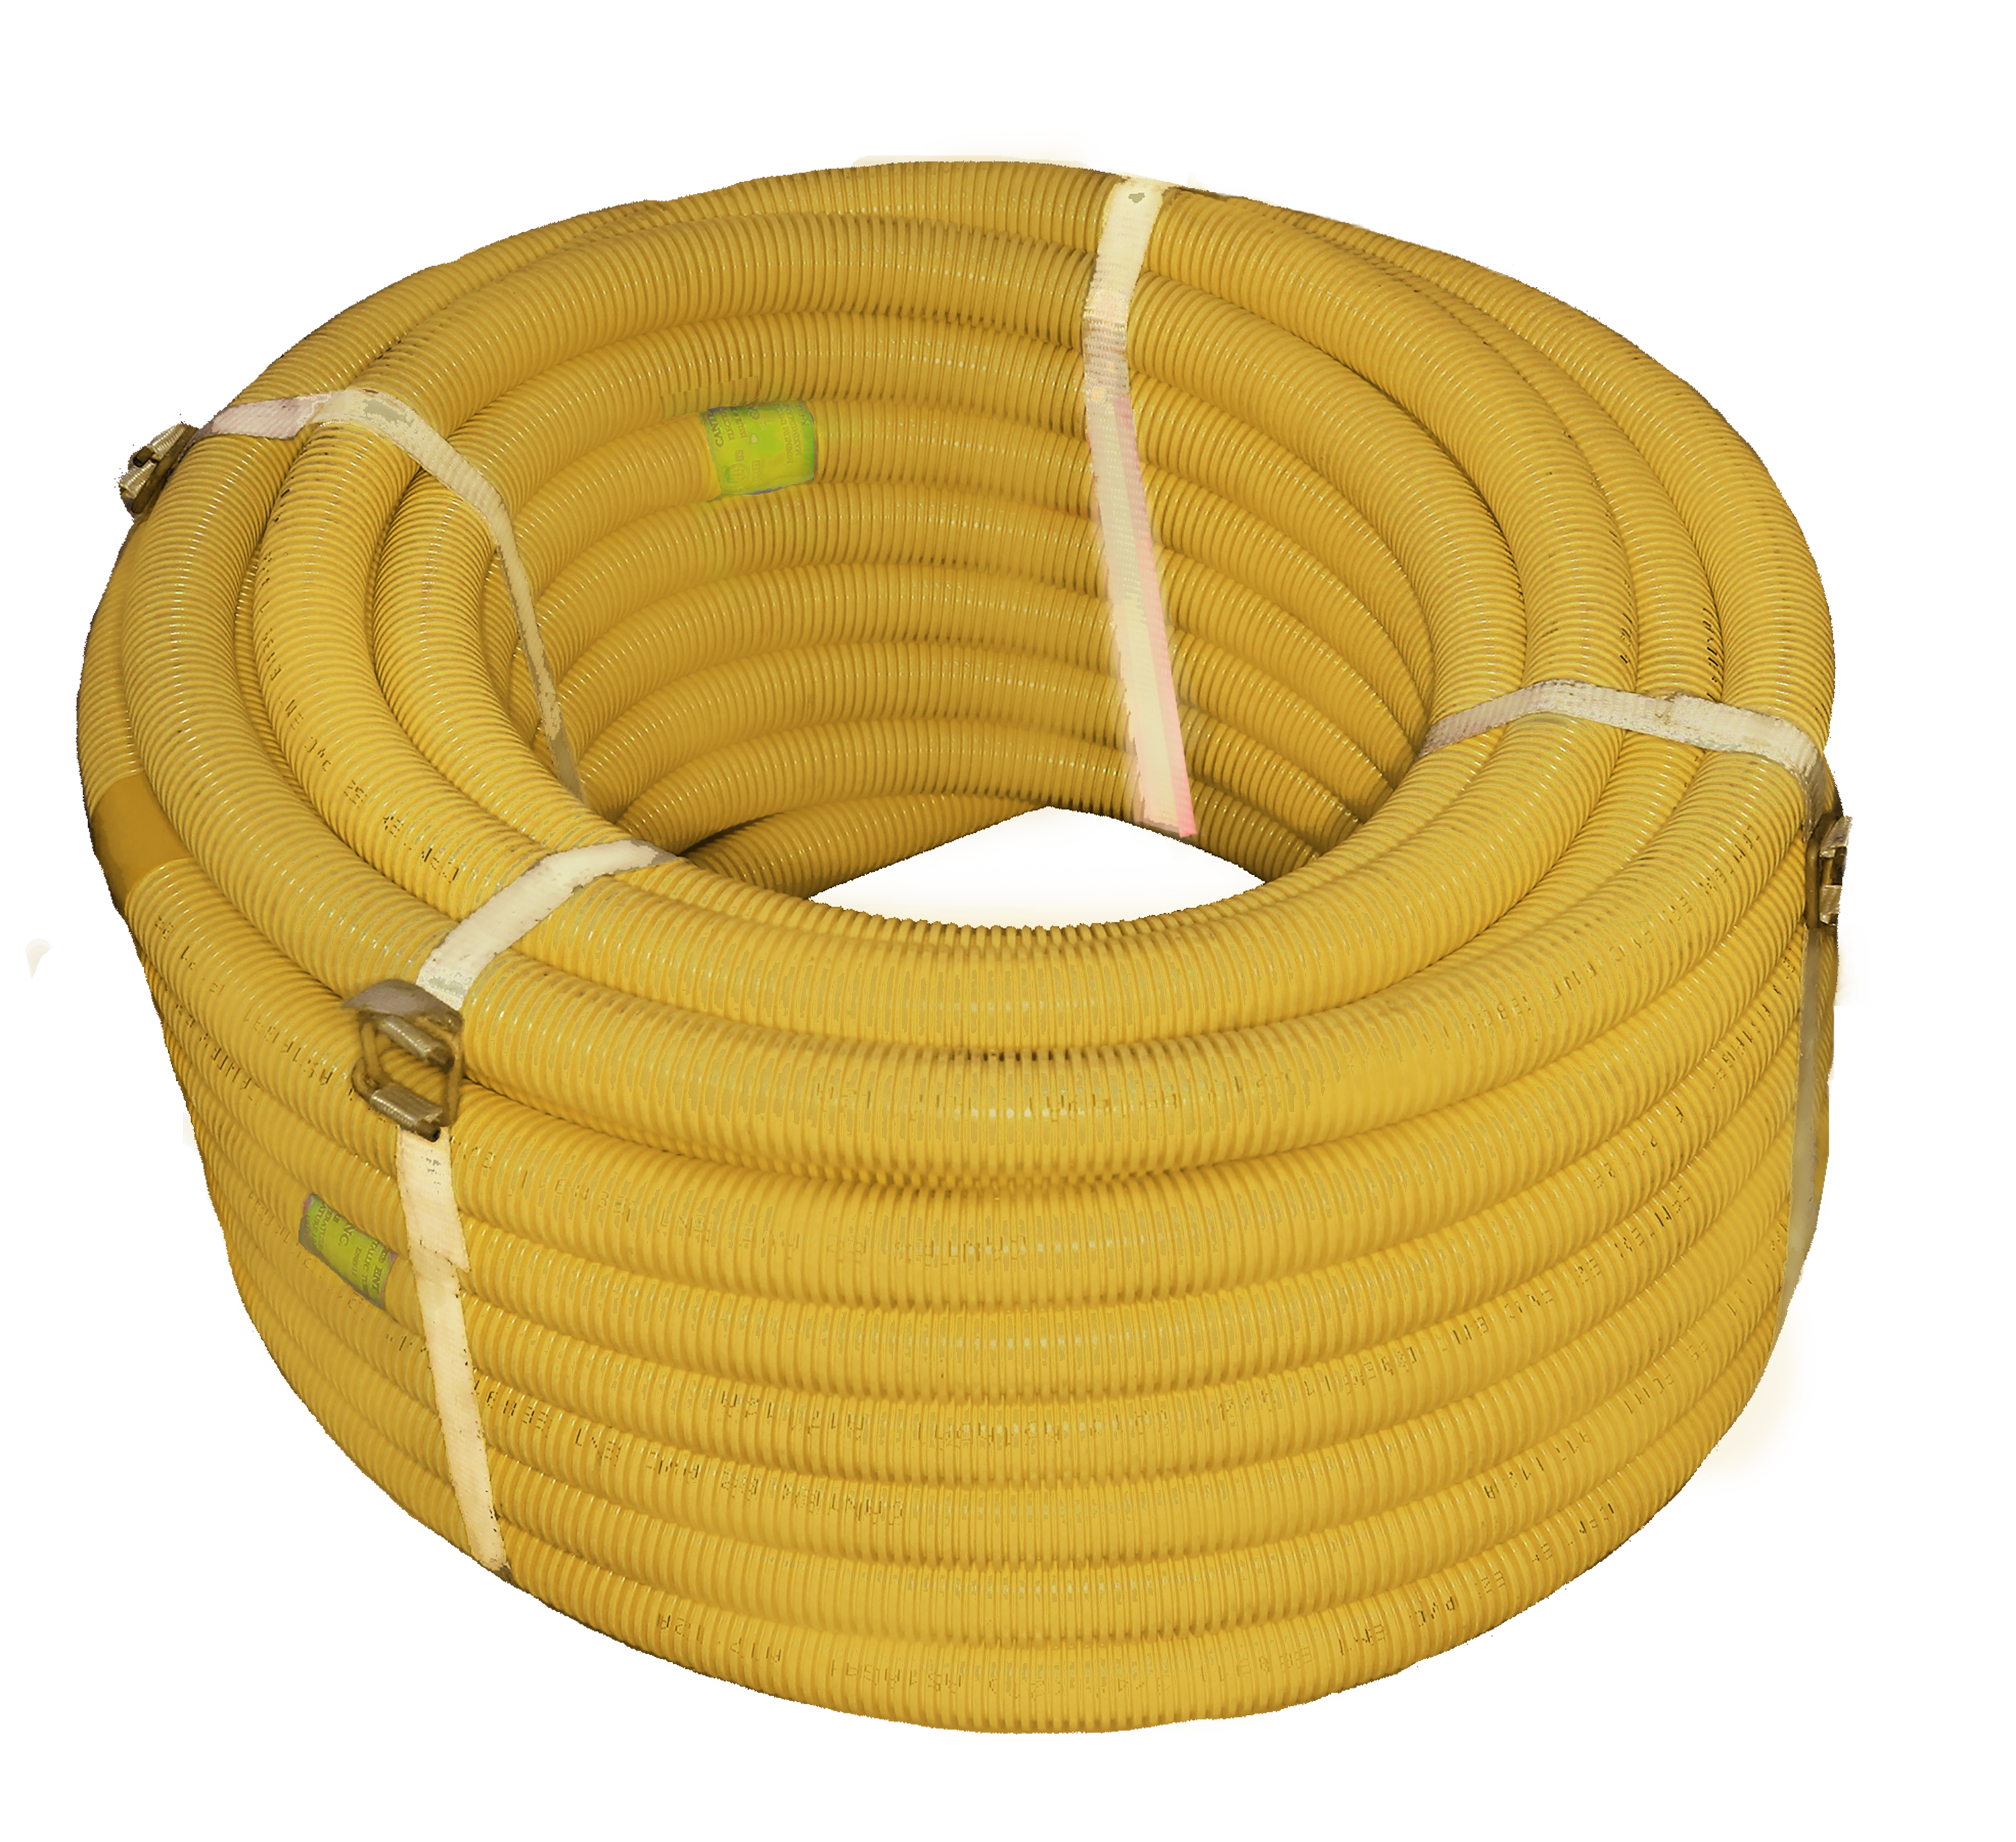 1/2 in. x 200 ft. coilYellow EZ-Flex Flexible ENT Electrical Nonmetallic Tubing